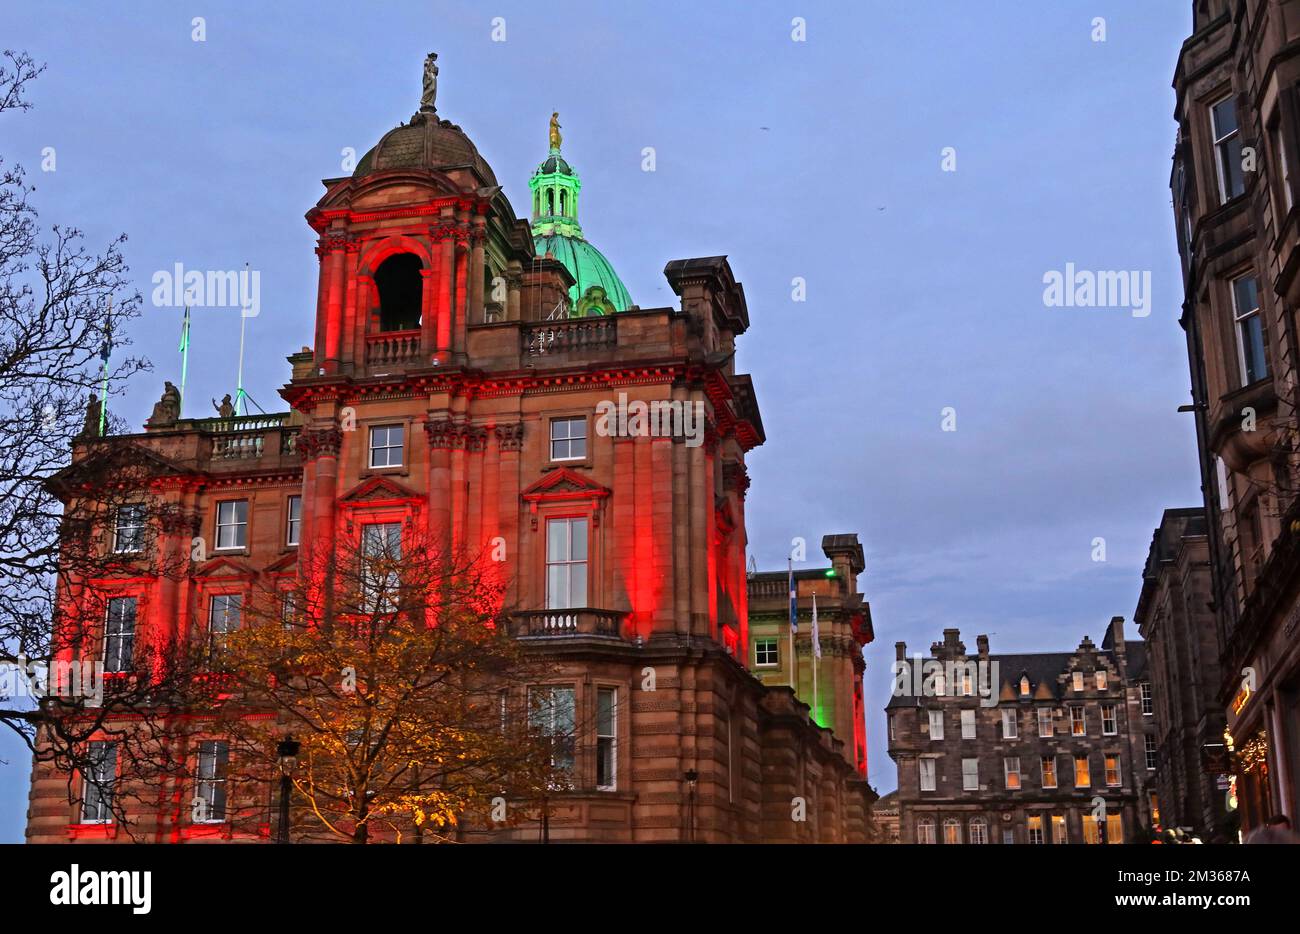 Die Hauptniederlassung der Bank of Scotland at Night, The Mound & Bank Street Skyline, Edinburgh, Lothians, Schottland, Großbritannien, EH1 1YZ Stockfoto